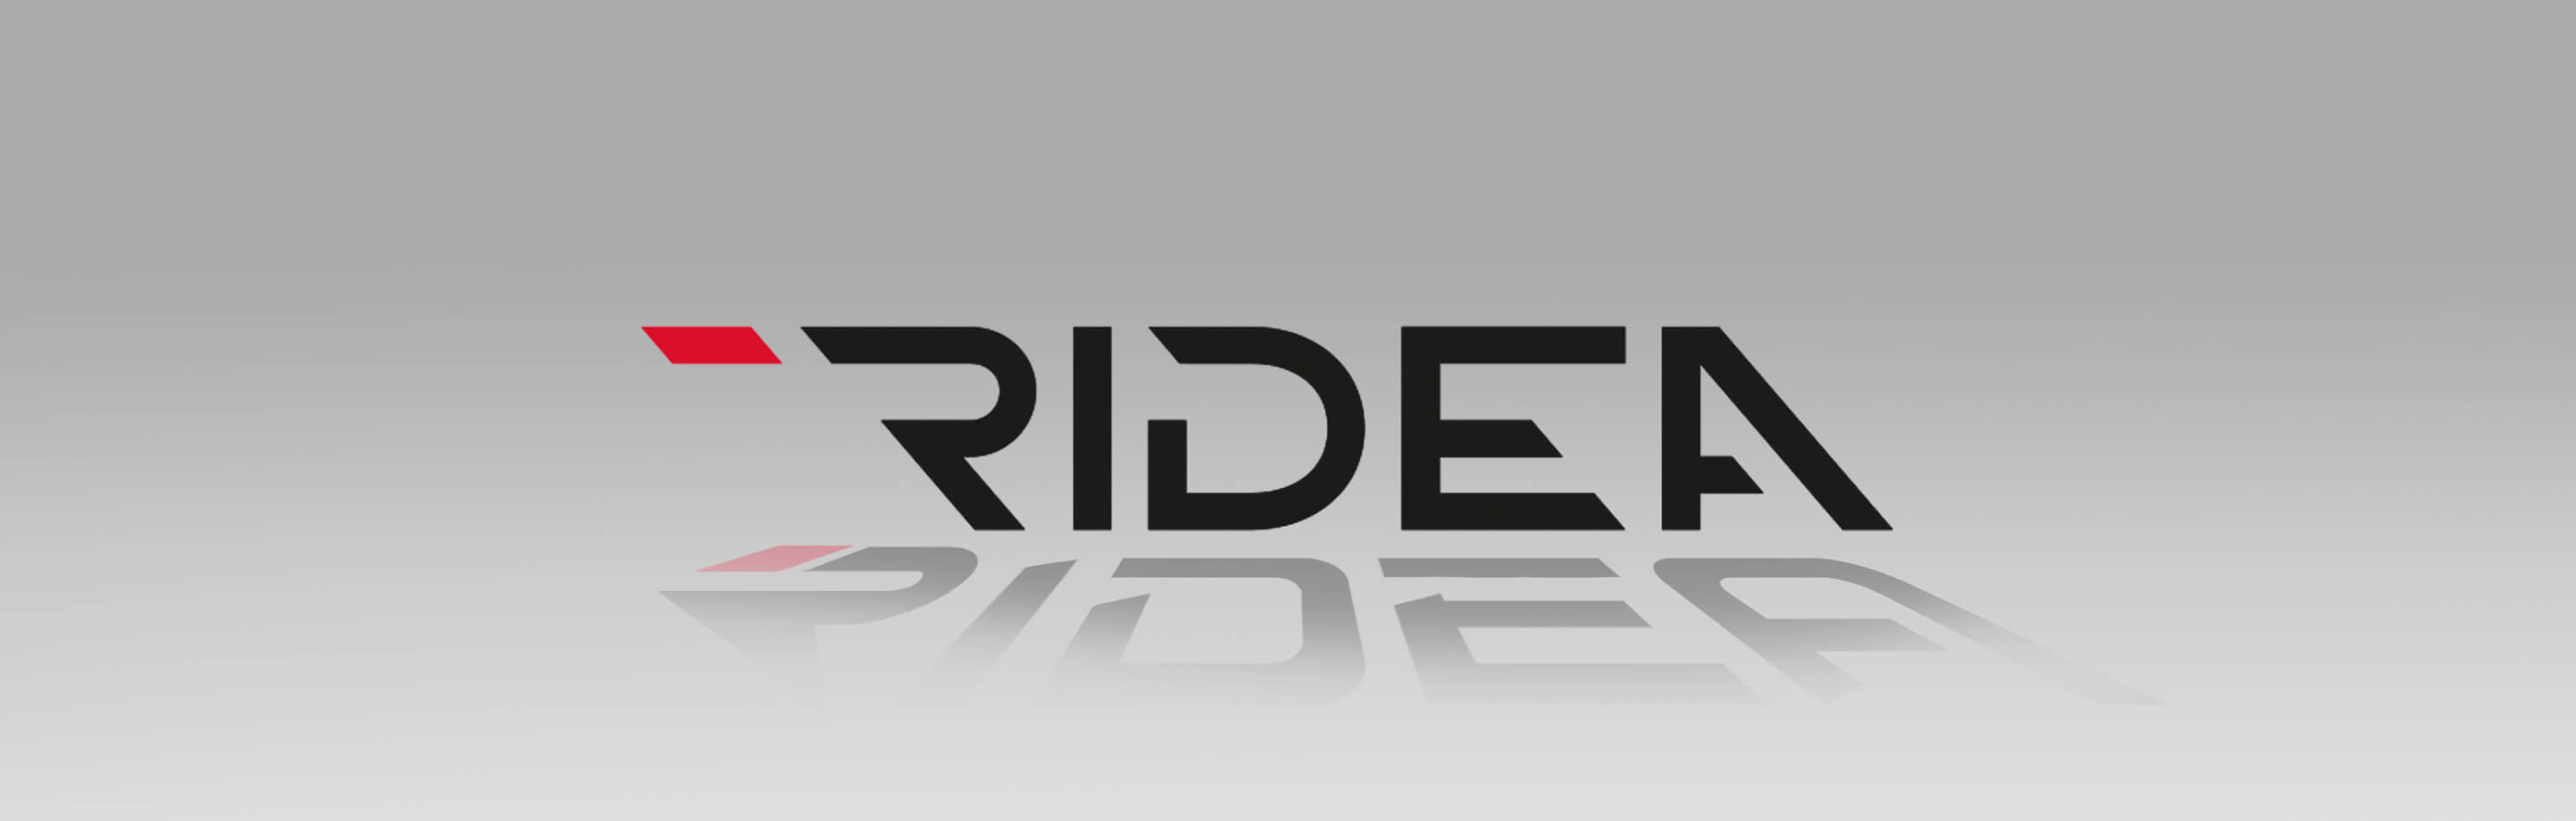 Lntroducing the new Ridea logo